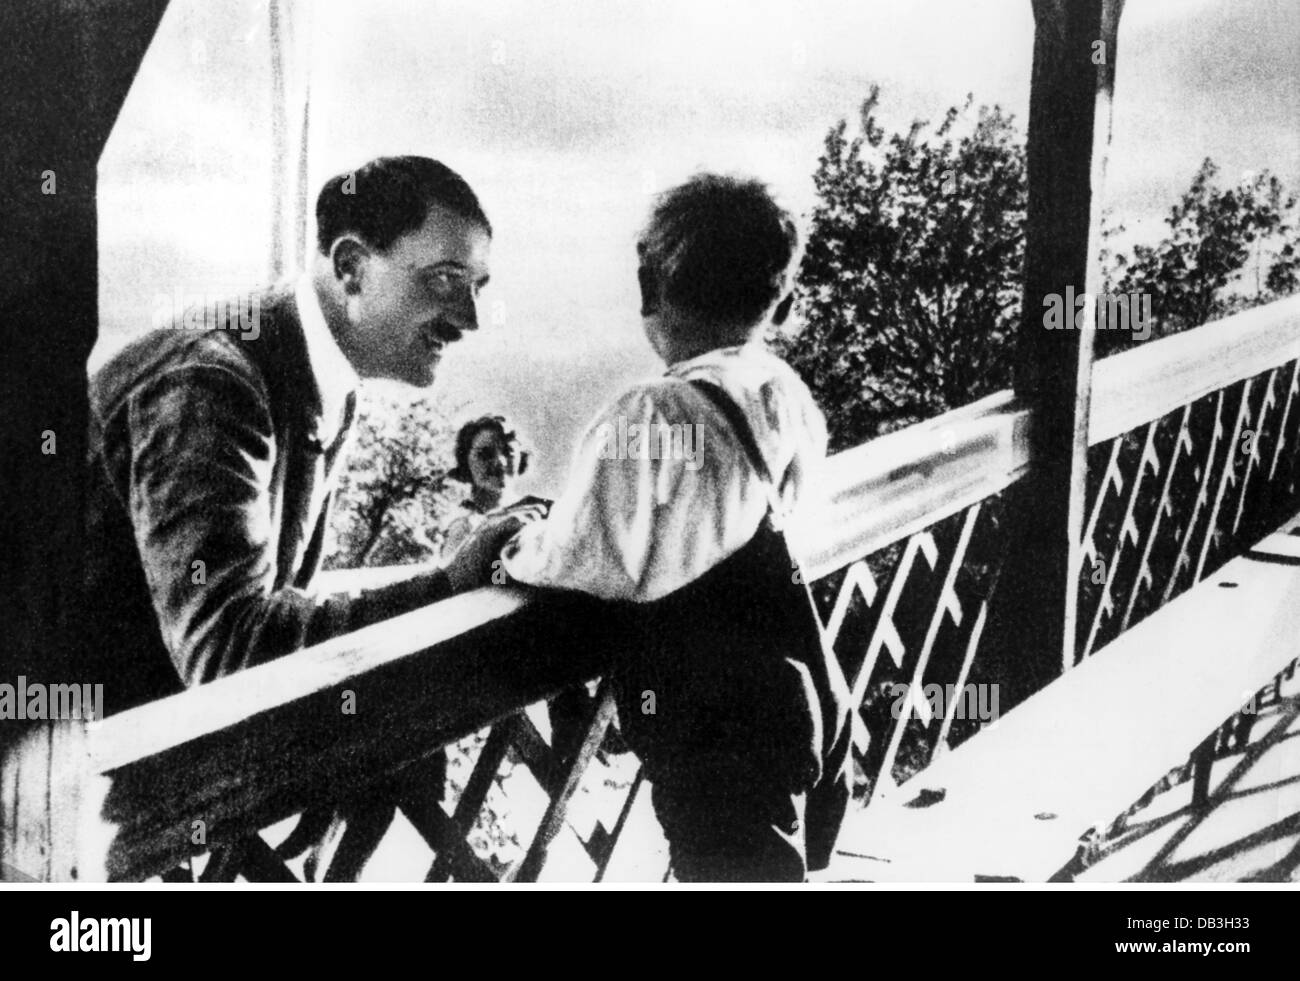 Hitler, Adolf, 20.4.1889 - 30.4.1945, deutscher Politiker (NSDAP), Reichskanzler 30.1.1933 - 30.4.1945, Gruß an einen kleinen Jungen, Obersalzberg, ca. 1935, Stockfoto